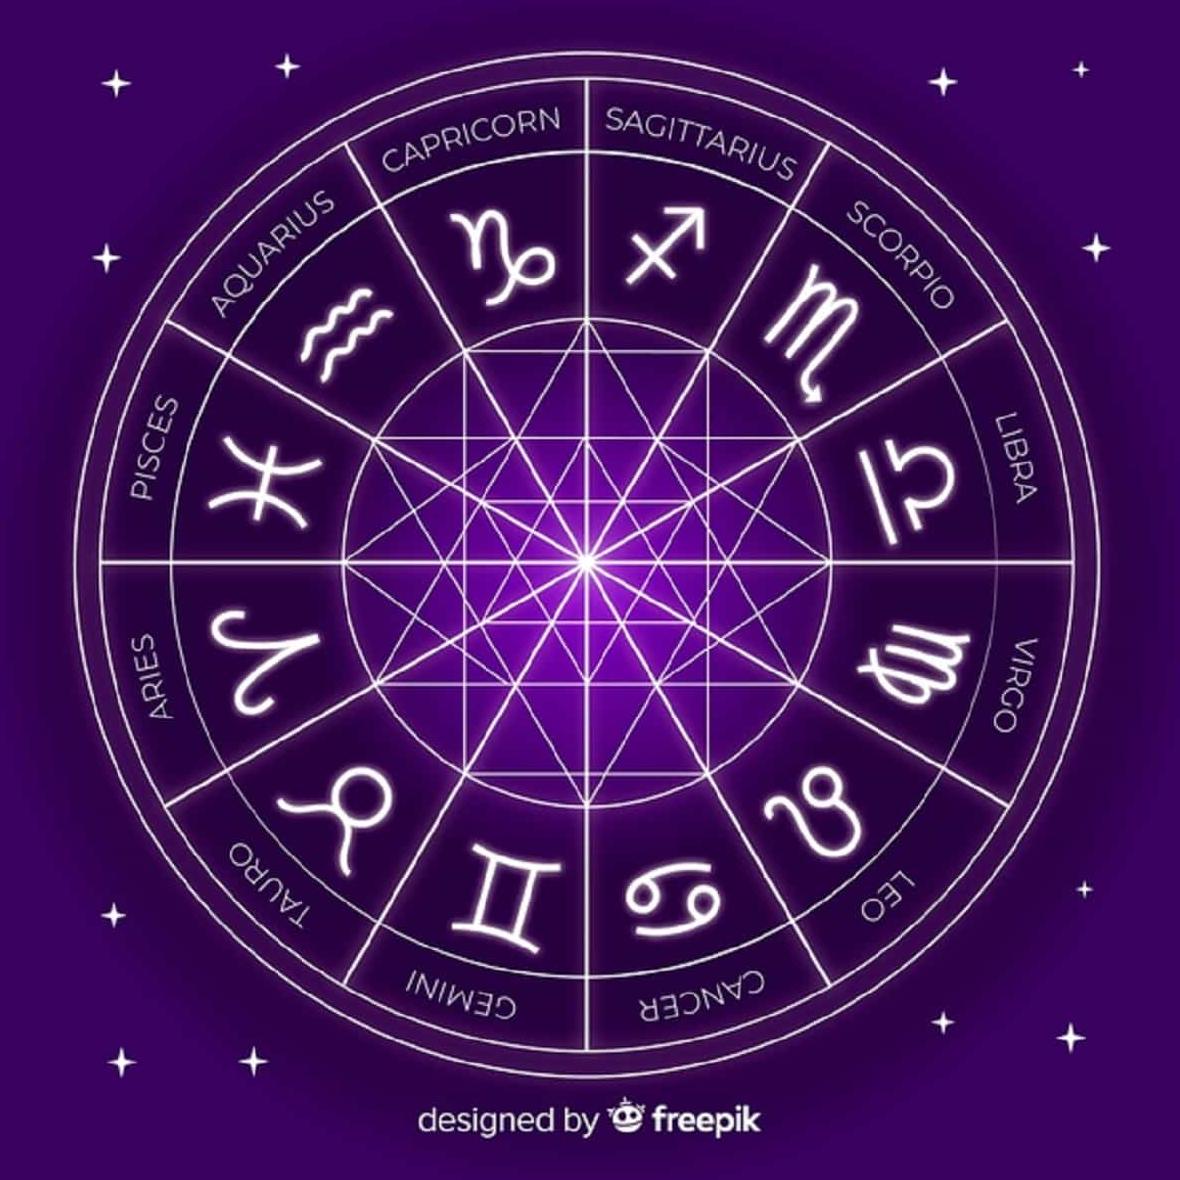 Descubra a personalidade de cada signo do Zodíaco